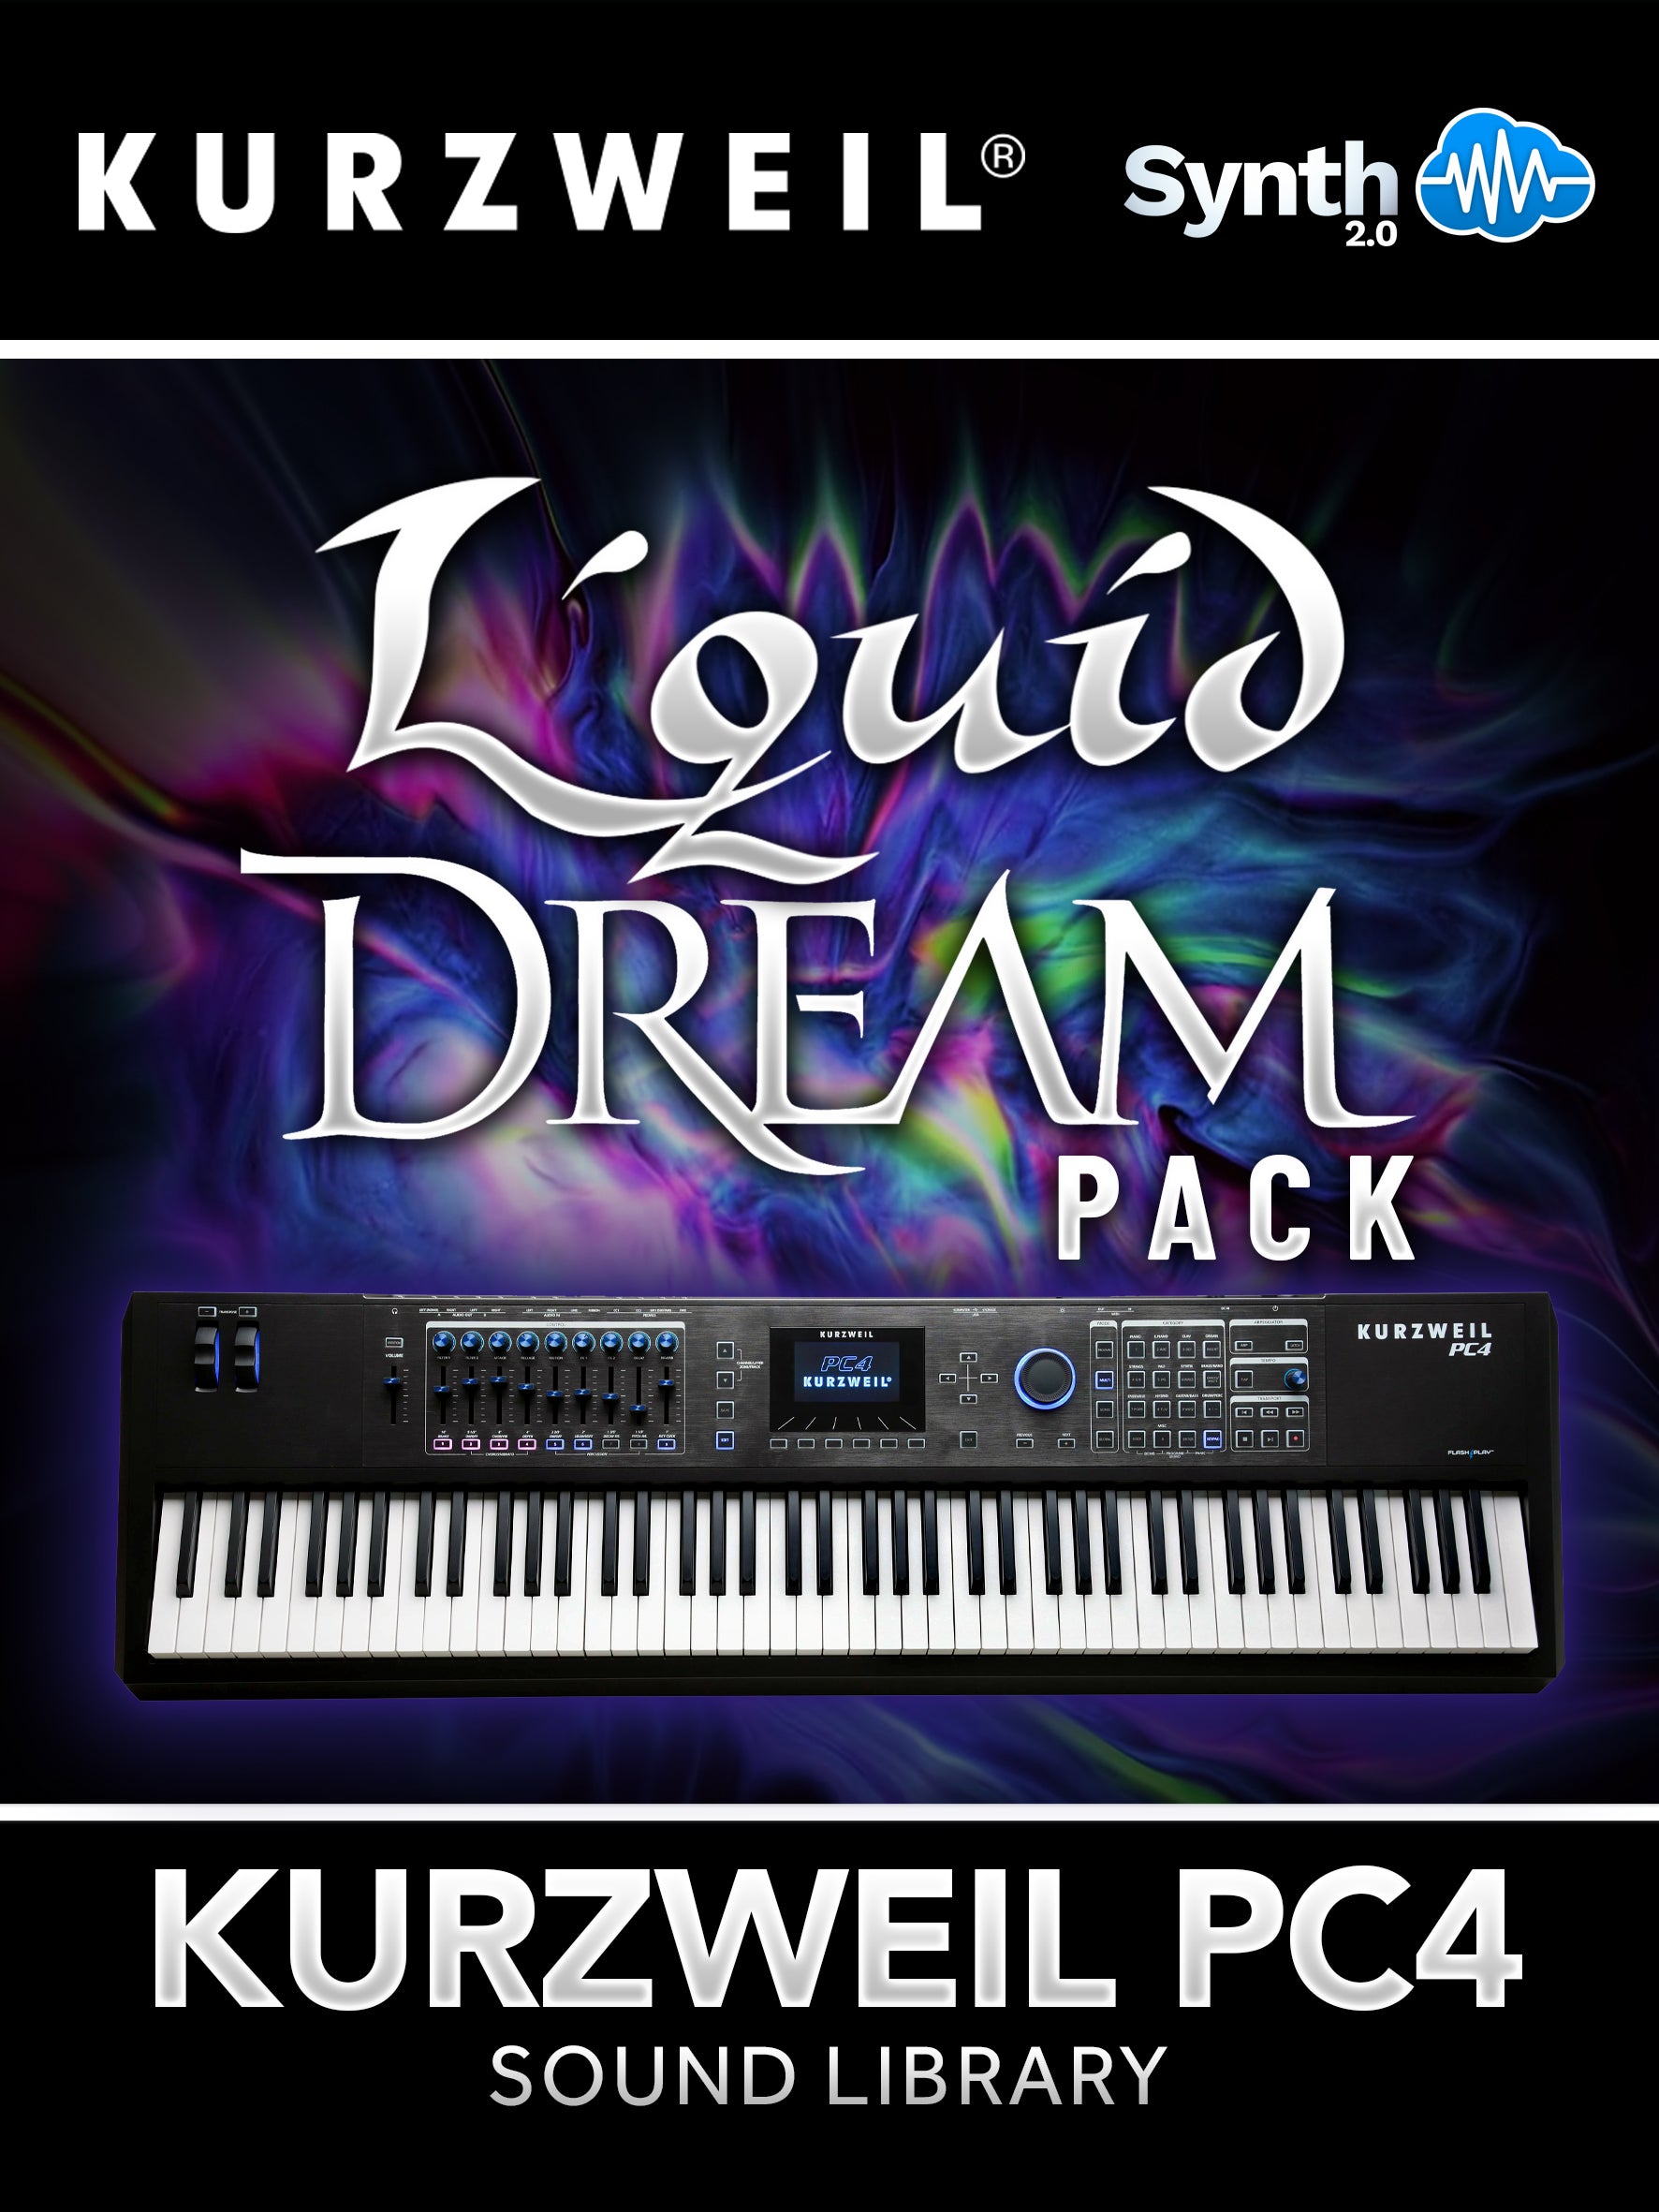 DRS037 - ( Bundle ) - DX Monster + Liquid Dream Pack - Kurzweil PC4 Series